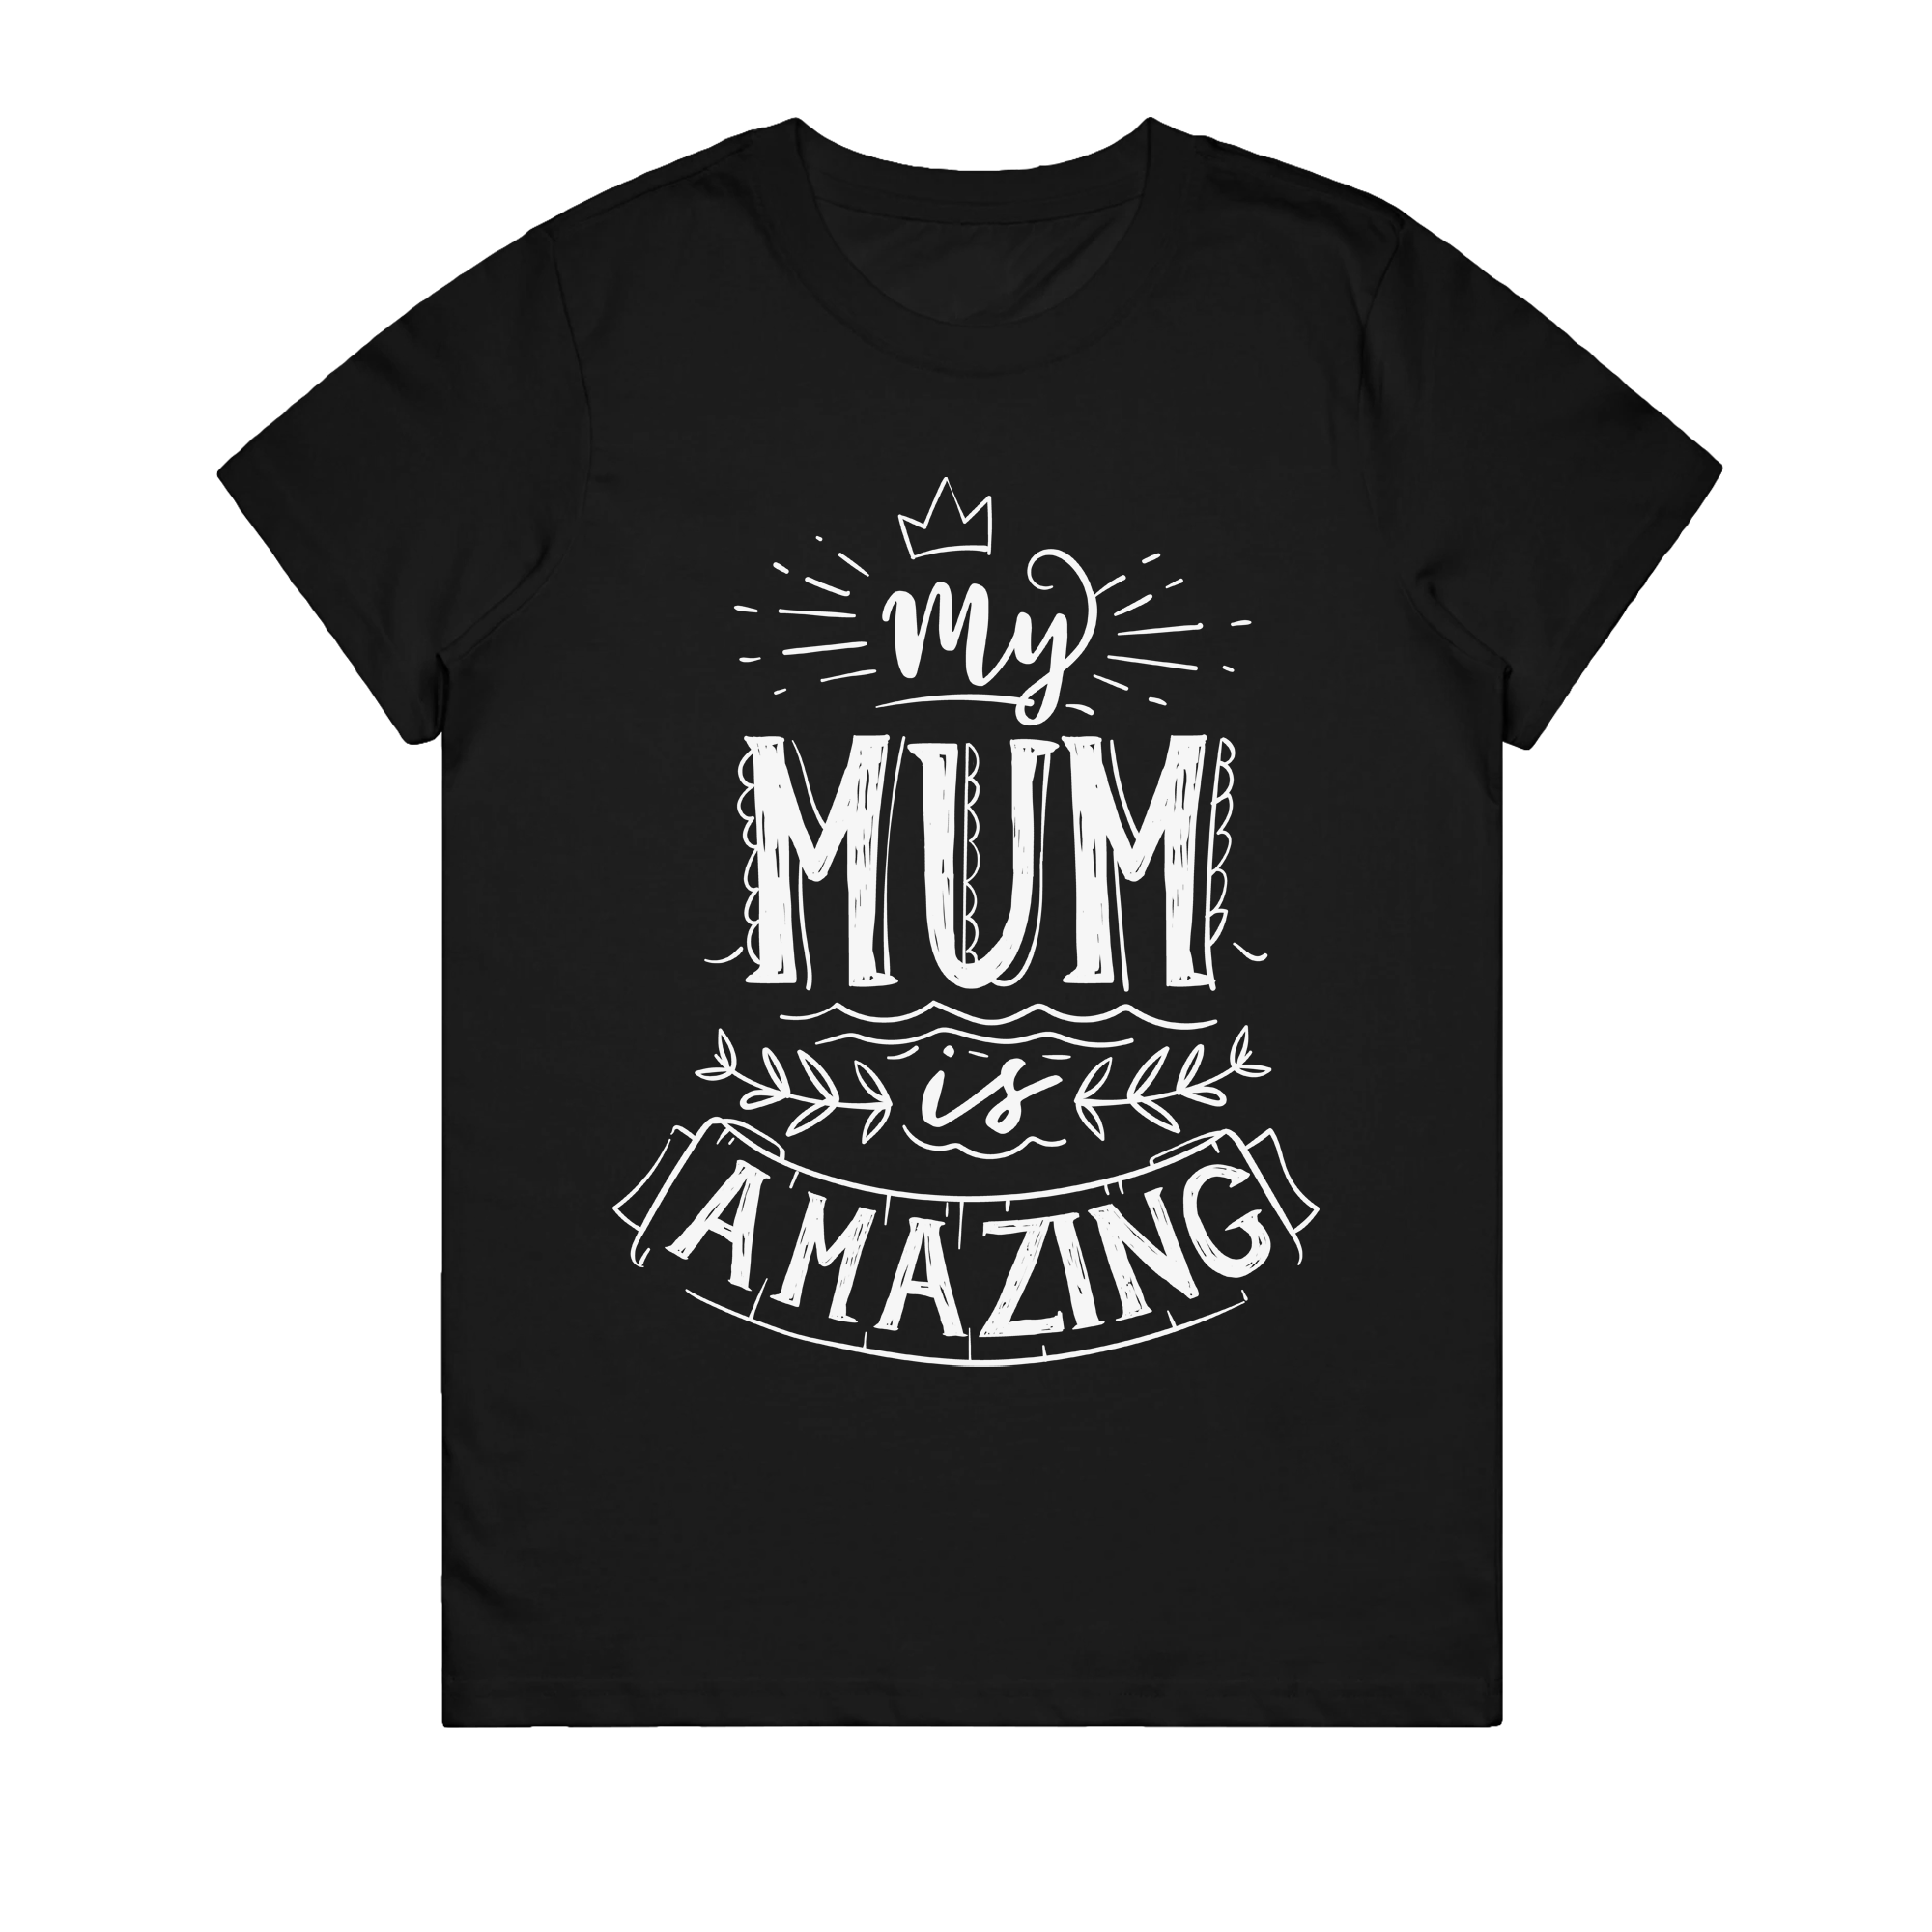 Women's T-Shirt - My Mum Is Amazing